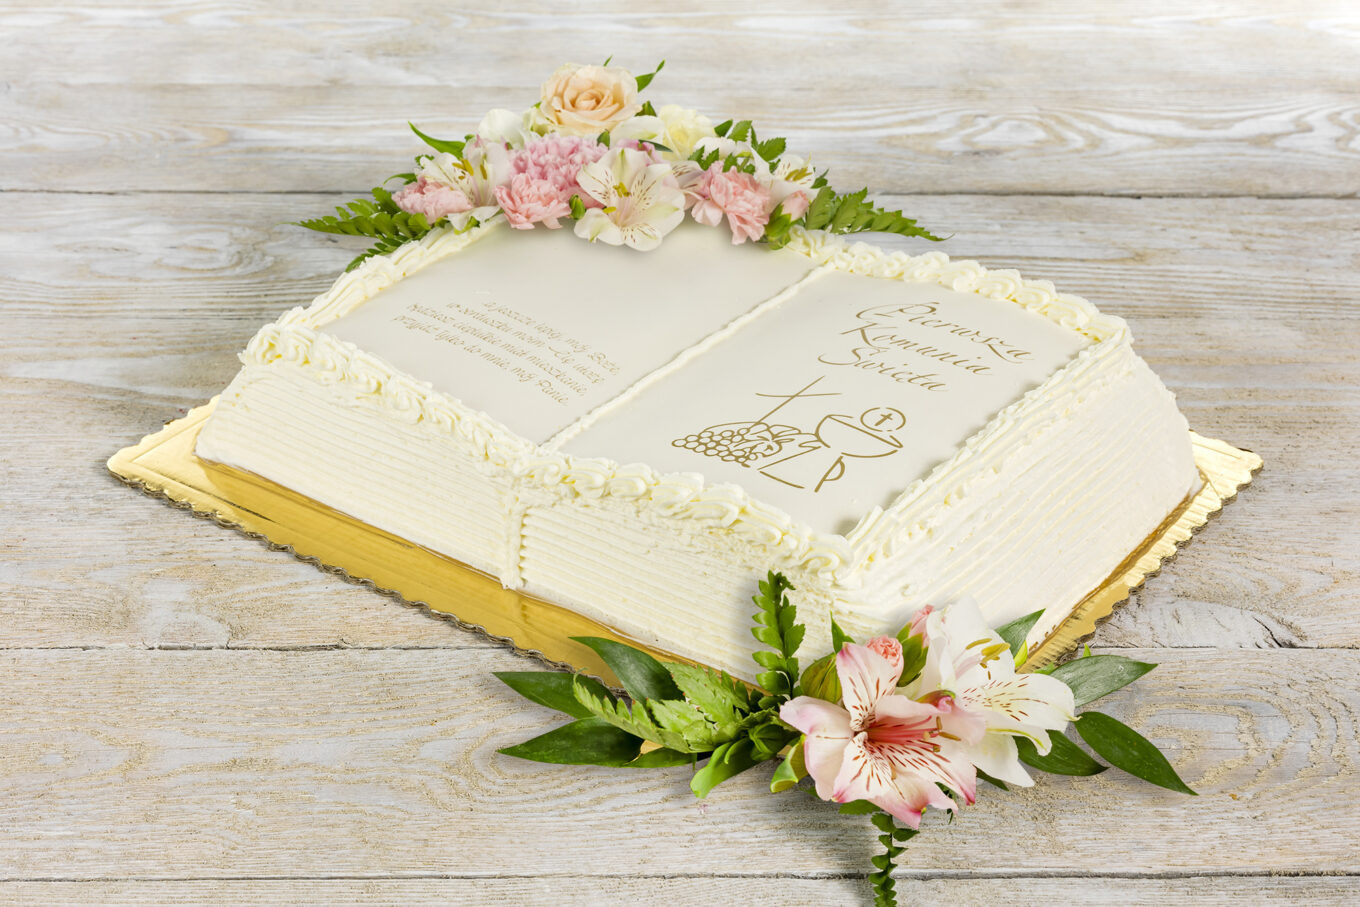 livre de gâteaux avec des fleurs pour la communion La confiserie Jacek Placek est synonyme du goût des gâteaux faits maison à base de produits naturels.